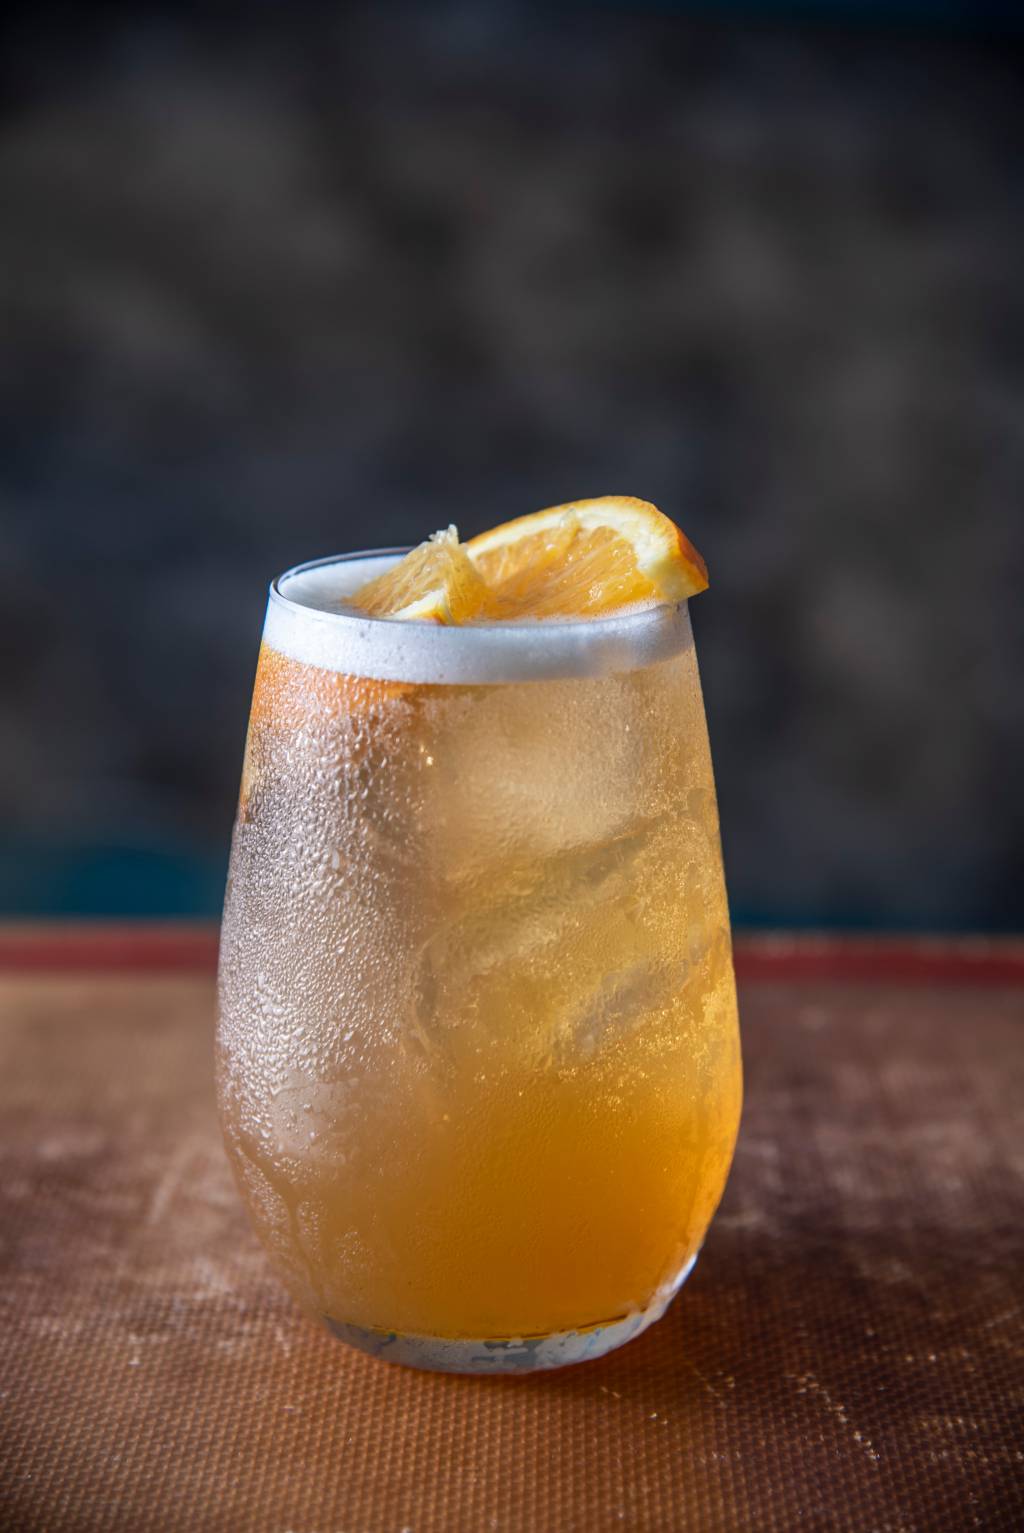 Drinque de cor levemente alaranjada servido em copo baixo decorado por fatias de laranja